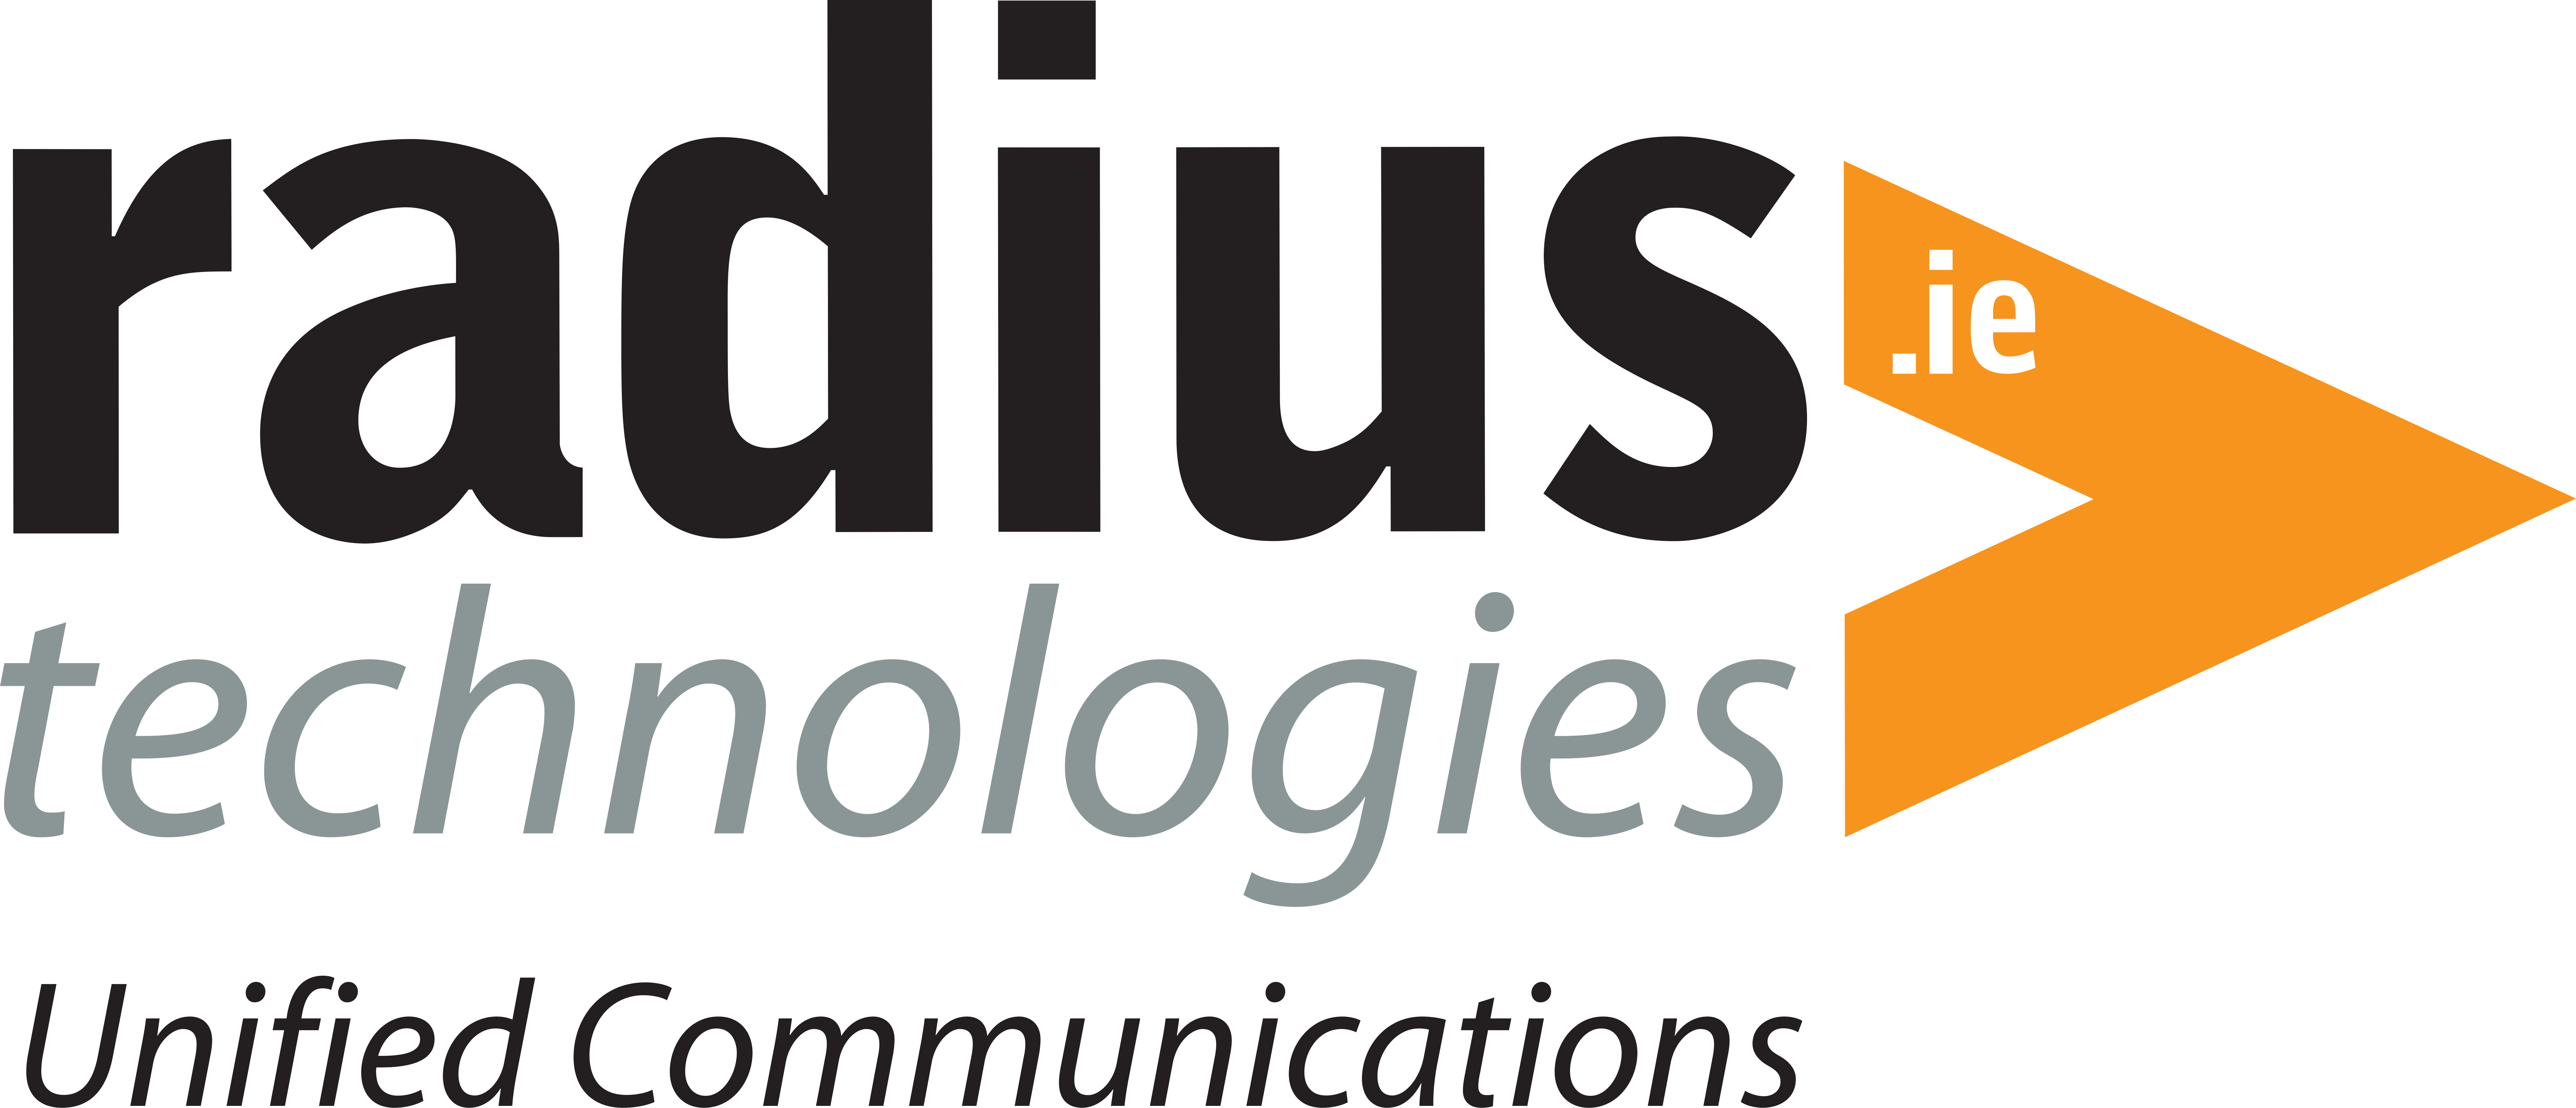 Radius-Technologies-Highest-Res